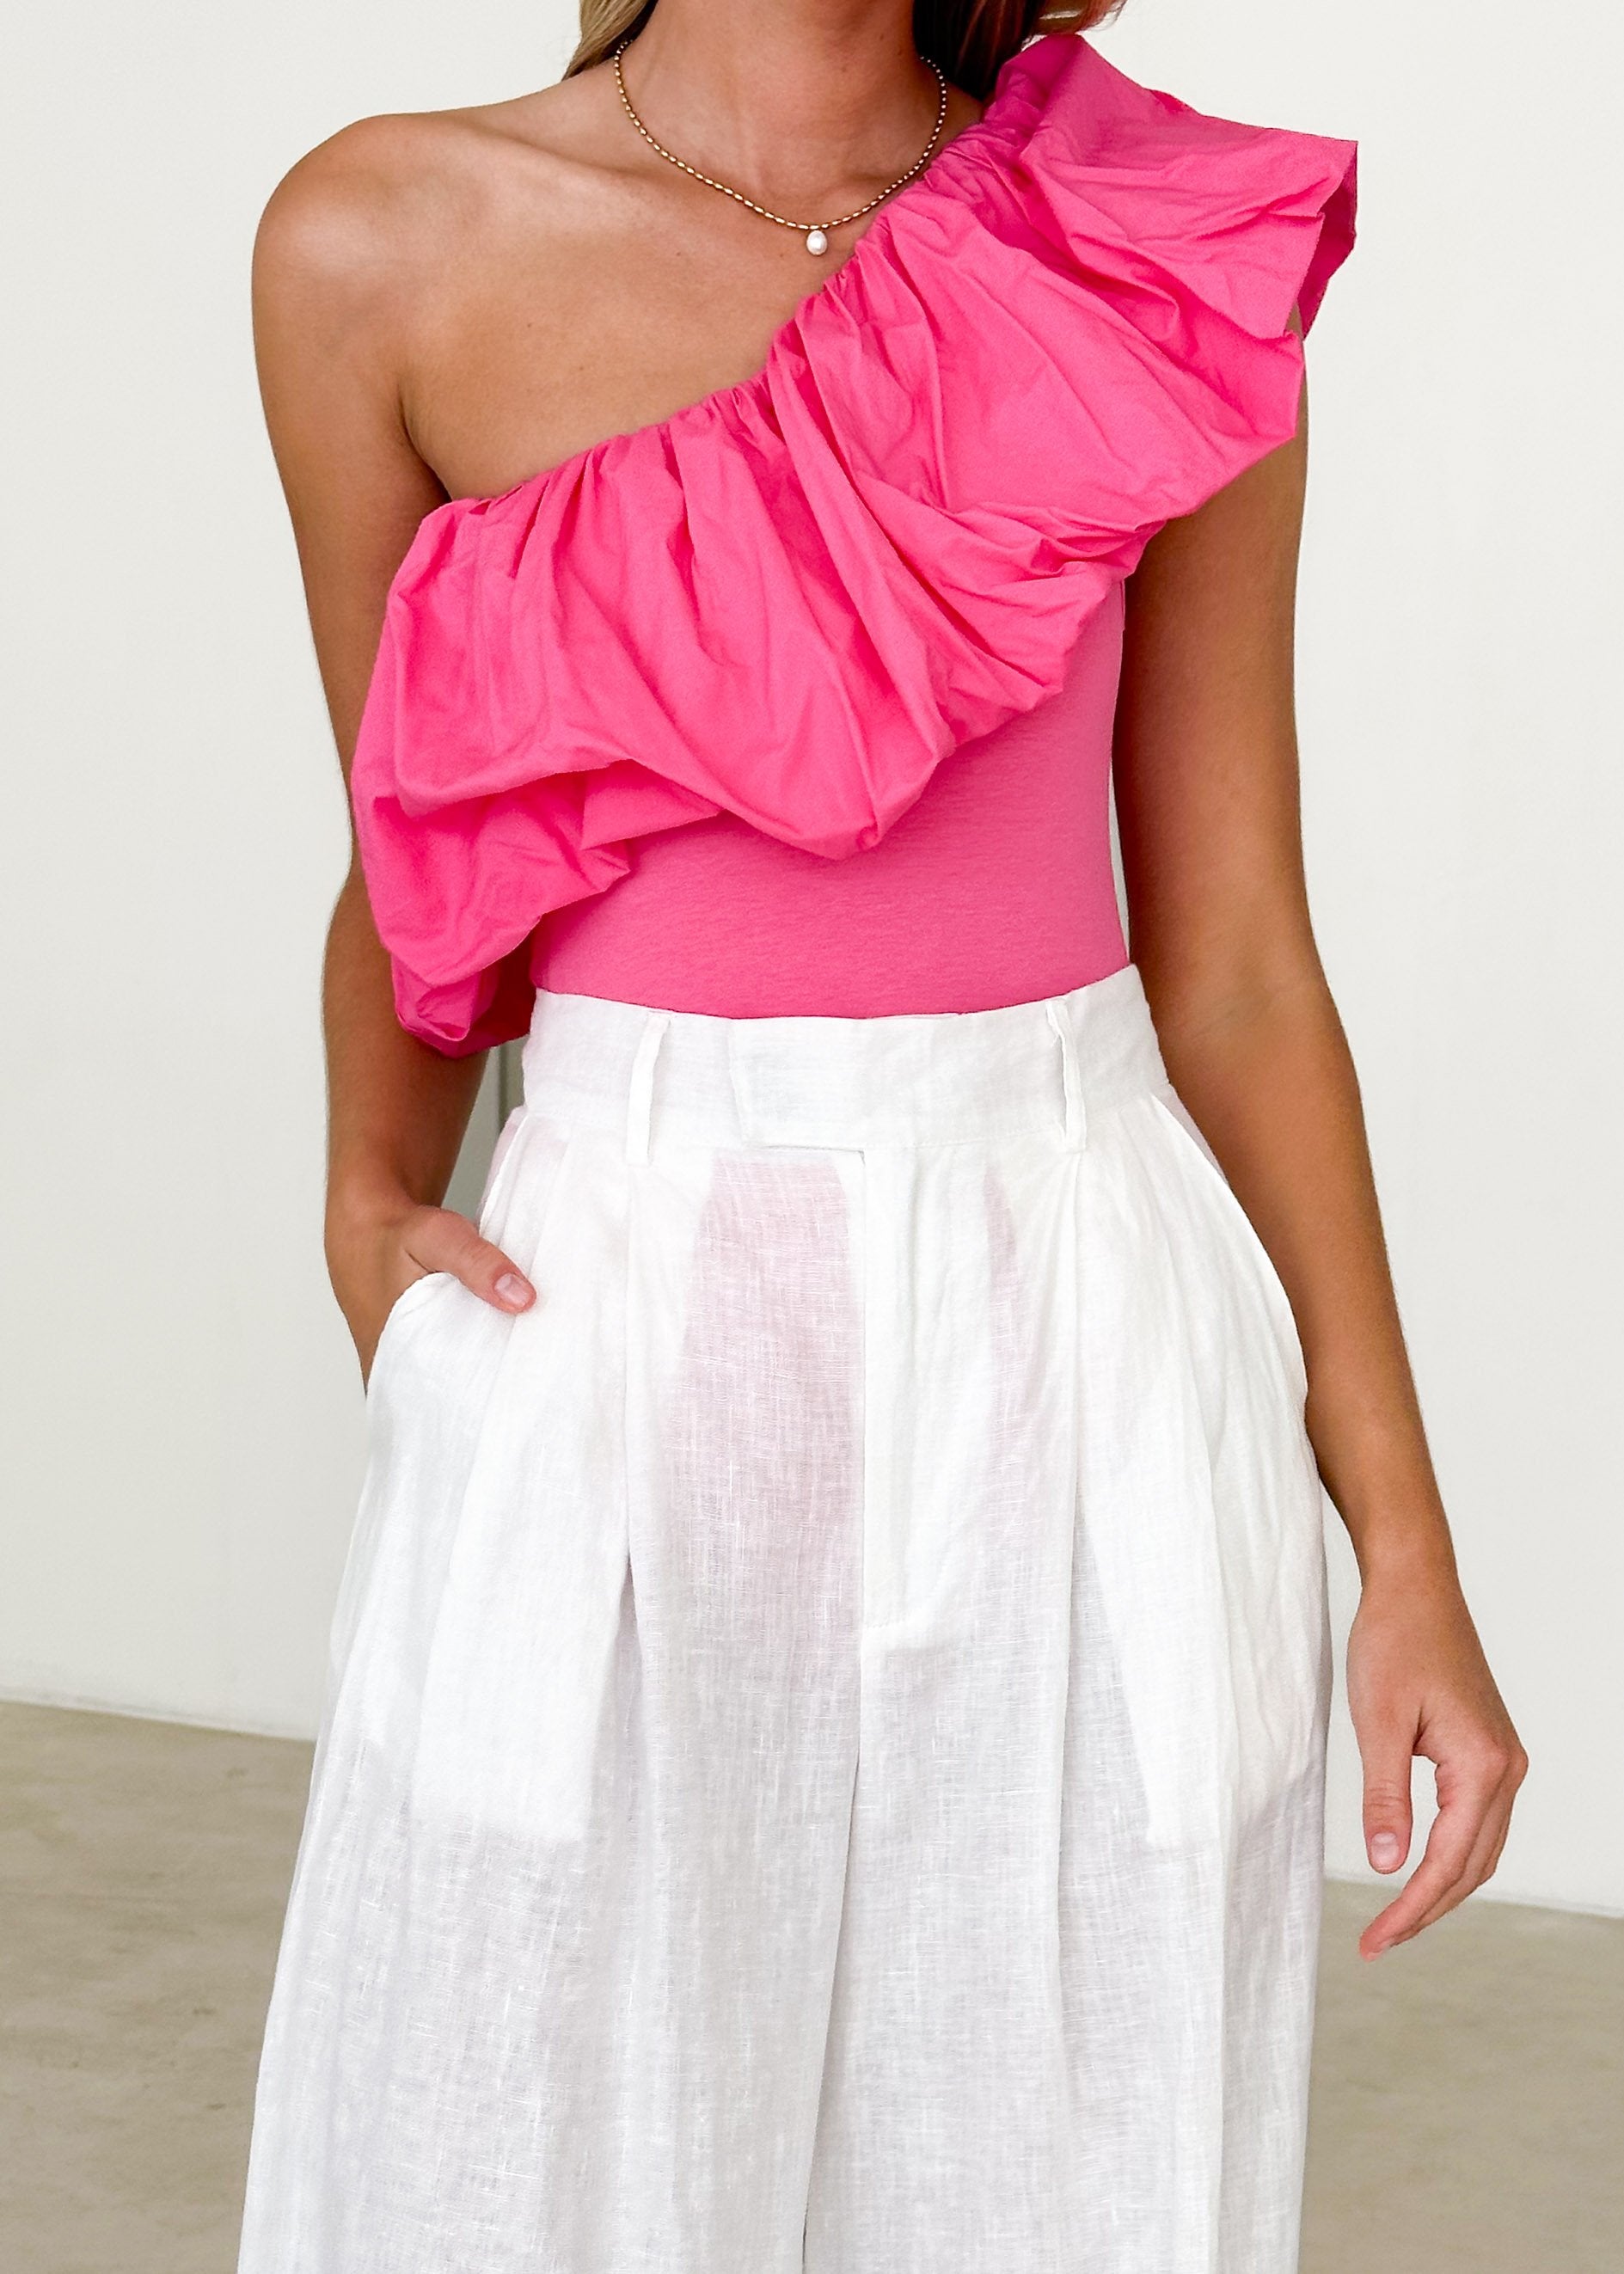 Rojin One Shoulder Bodysuit - Hot Pink